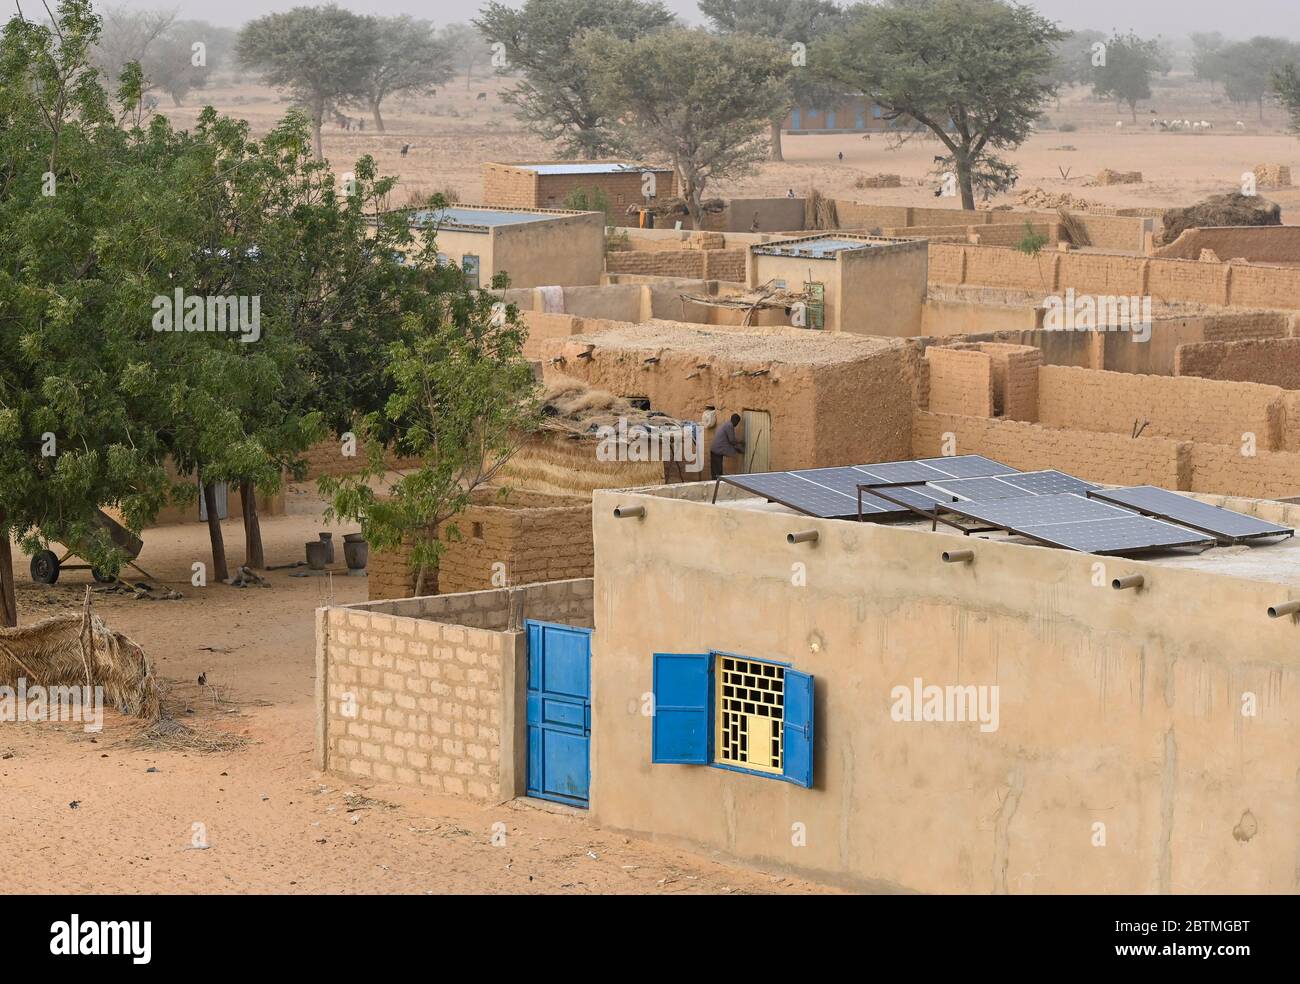 NIGER, Maradi, Dorf Dan Bako, Lehmhäuser und Zementbau mit Photovoltaik-Solaranlage / Haus aus Lehm und Zement mit Solar Home System Stockfoto